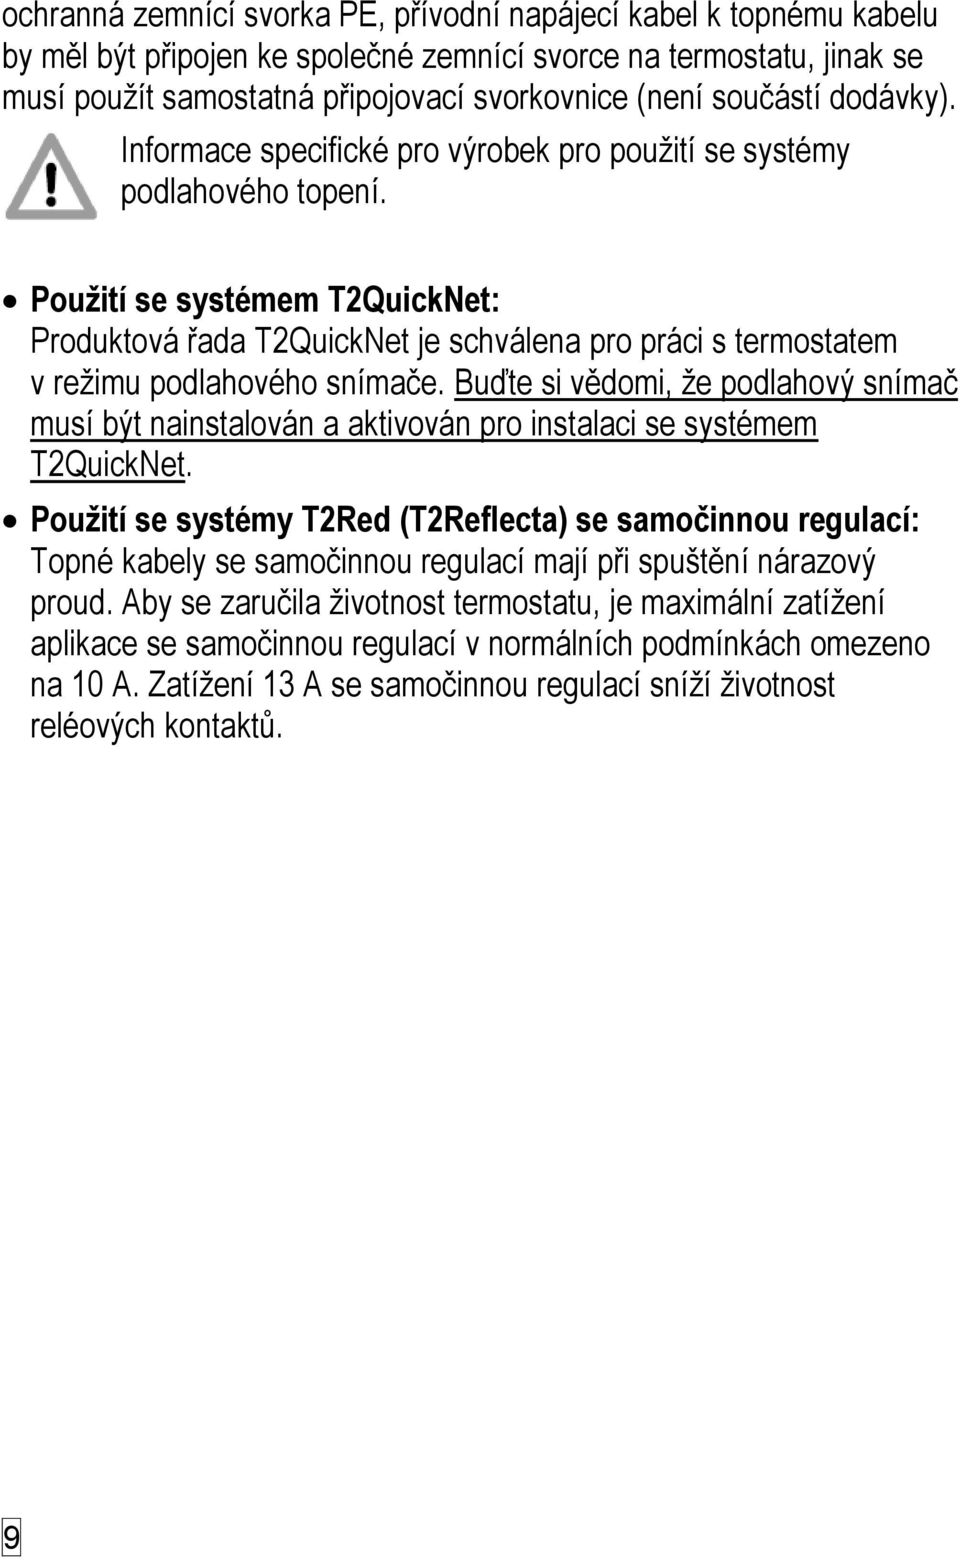 Použití se systémem T2QuickNet: Produktová řada T2QuickNet je schválena pro práci s termostatem v režimu podlahového snímače.